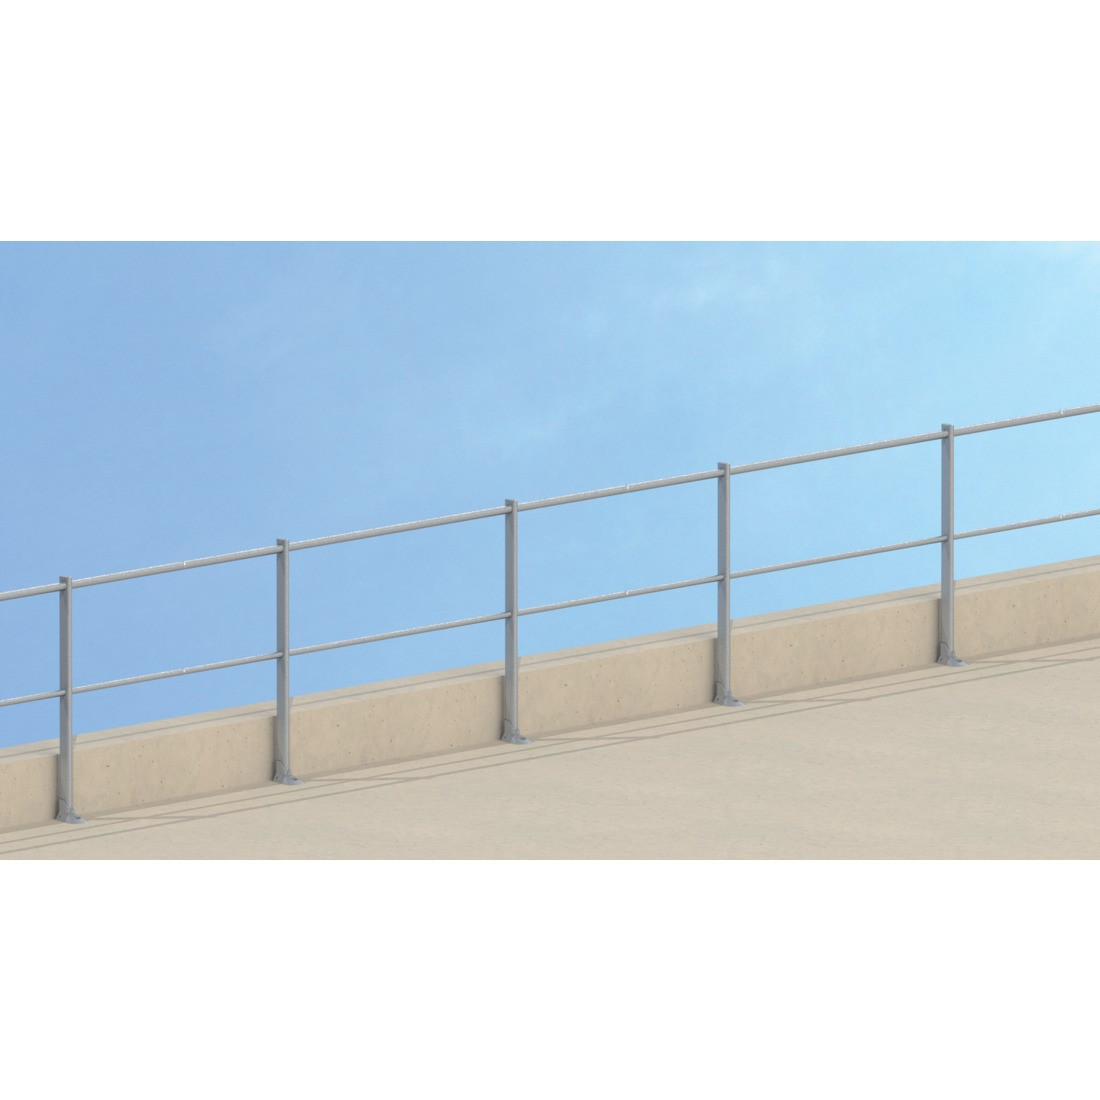 straight guardrail